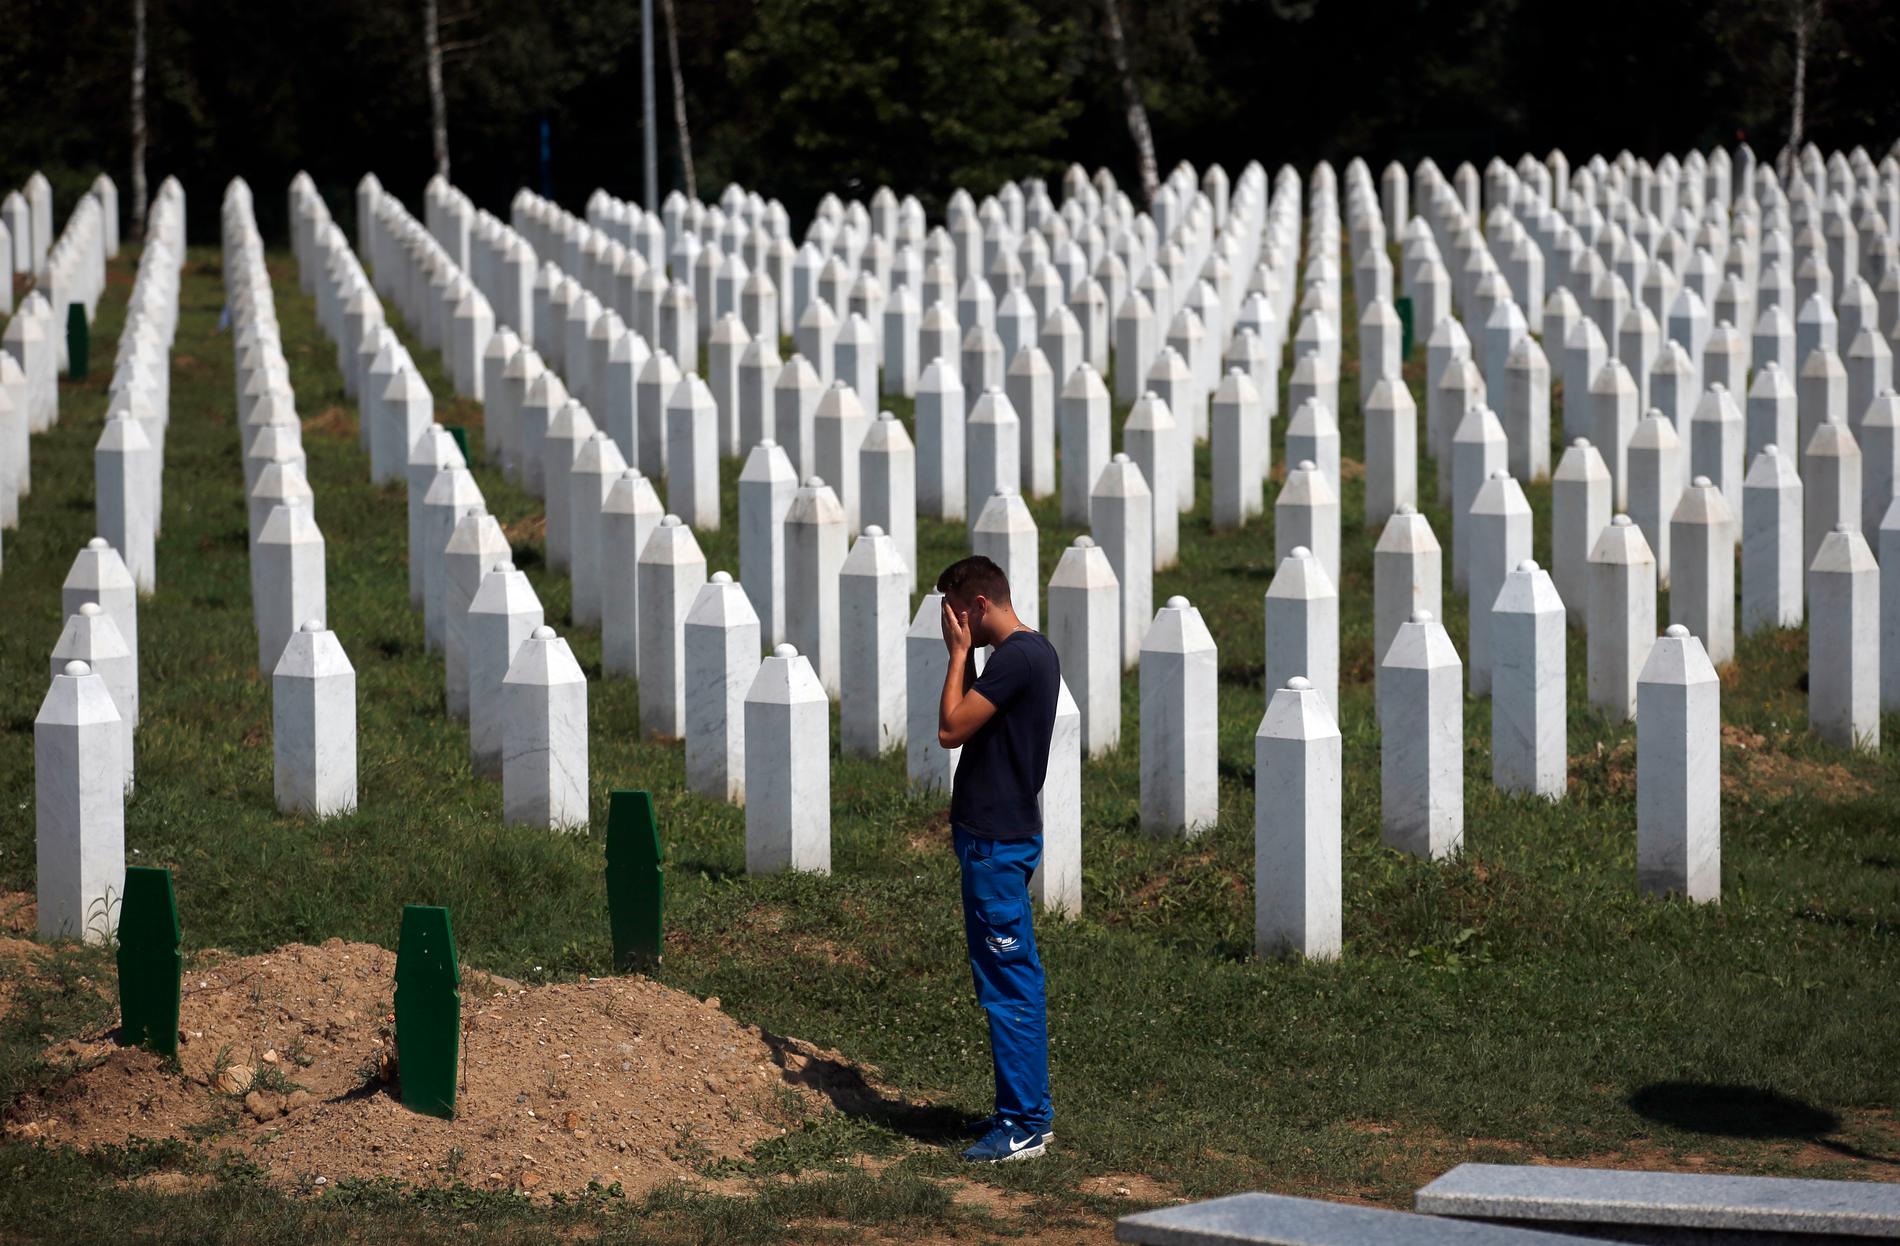 Det bosnienserbiska parlamentet har återkallat sitt stöd för den FN-rapport som slog fast att folkmord begåtts på 8 000 muslimer i Srebrenica under kriget, något som göder de etniska spänningarna i ett redan splittrat Bosnien. Bilden är från minnesmonumentet i Potocari nära Srebrenica.